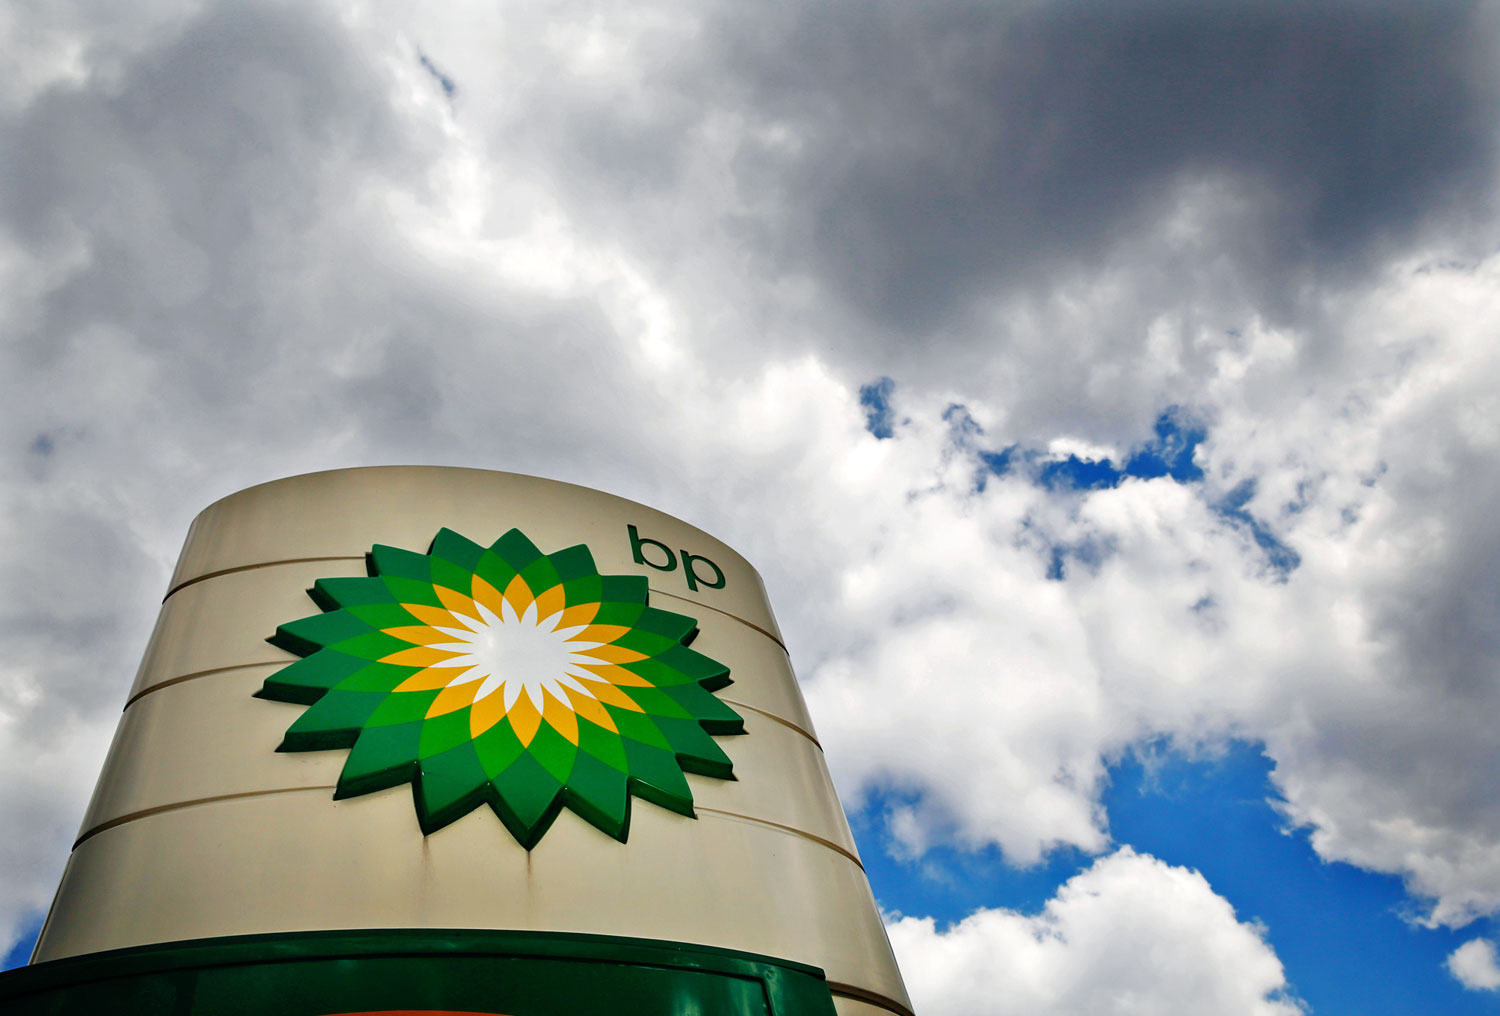 Viharfelhők gyülekeznek a BP fölött, de a brit állam odaáll az energiakonszern mögé